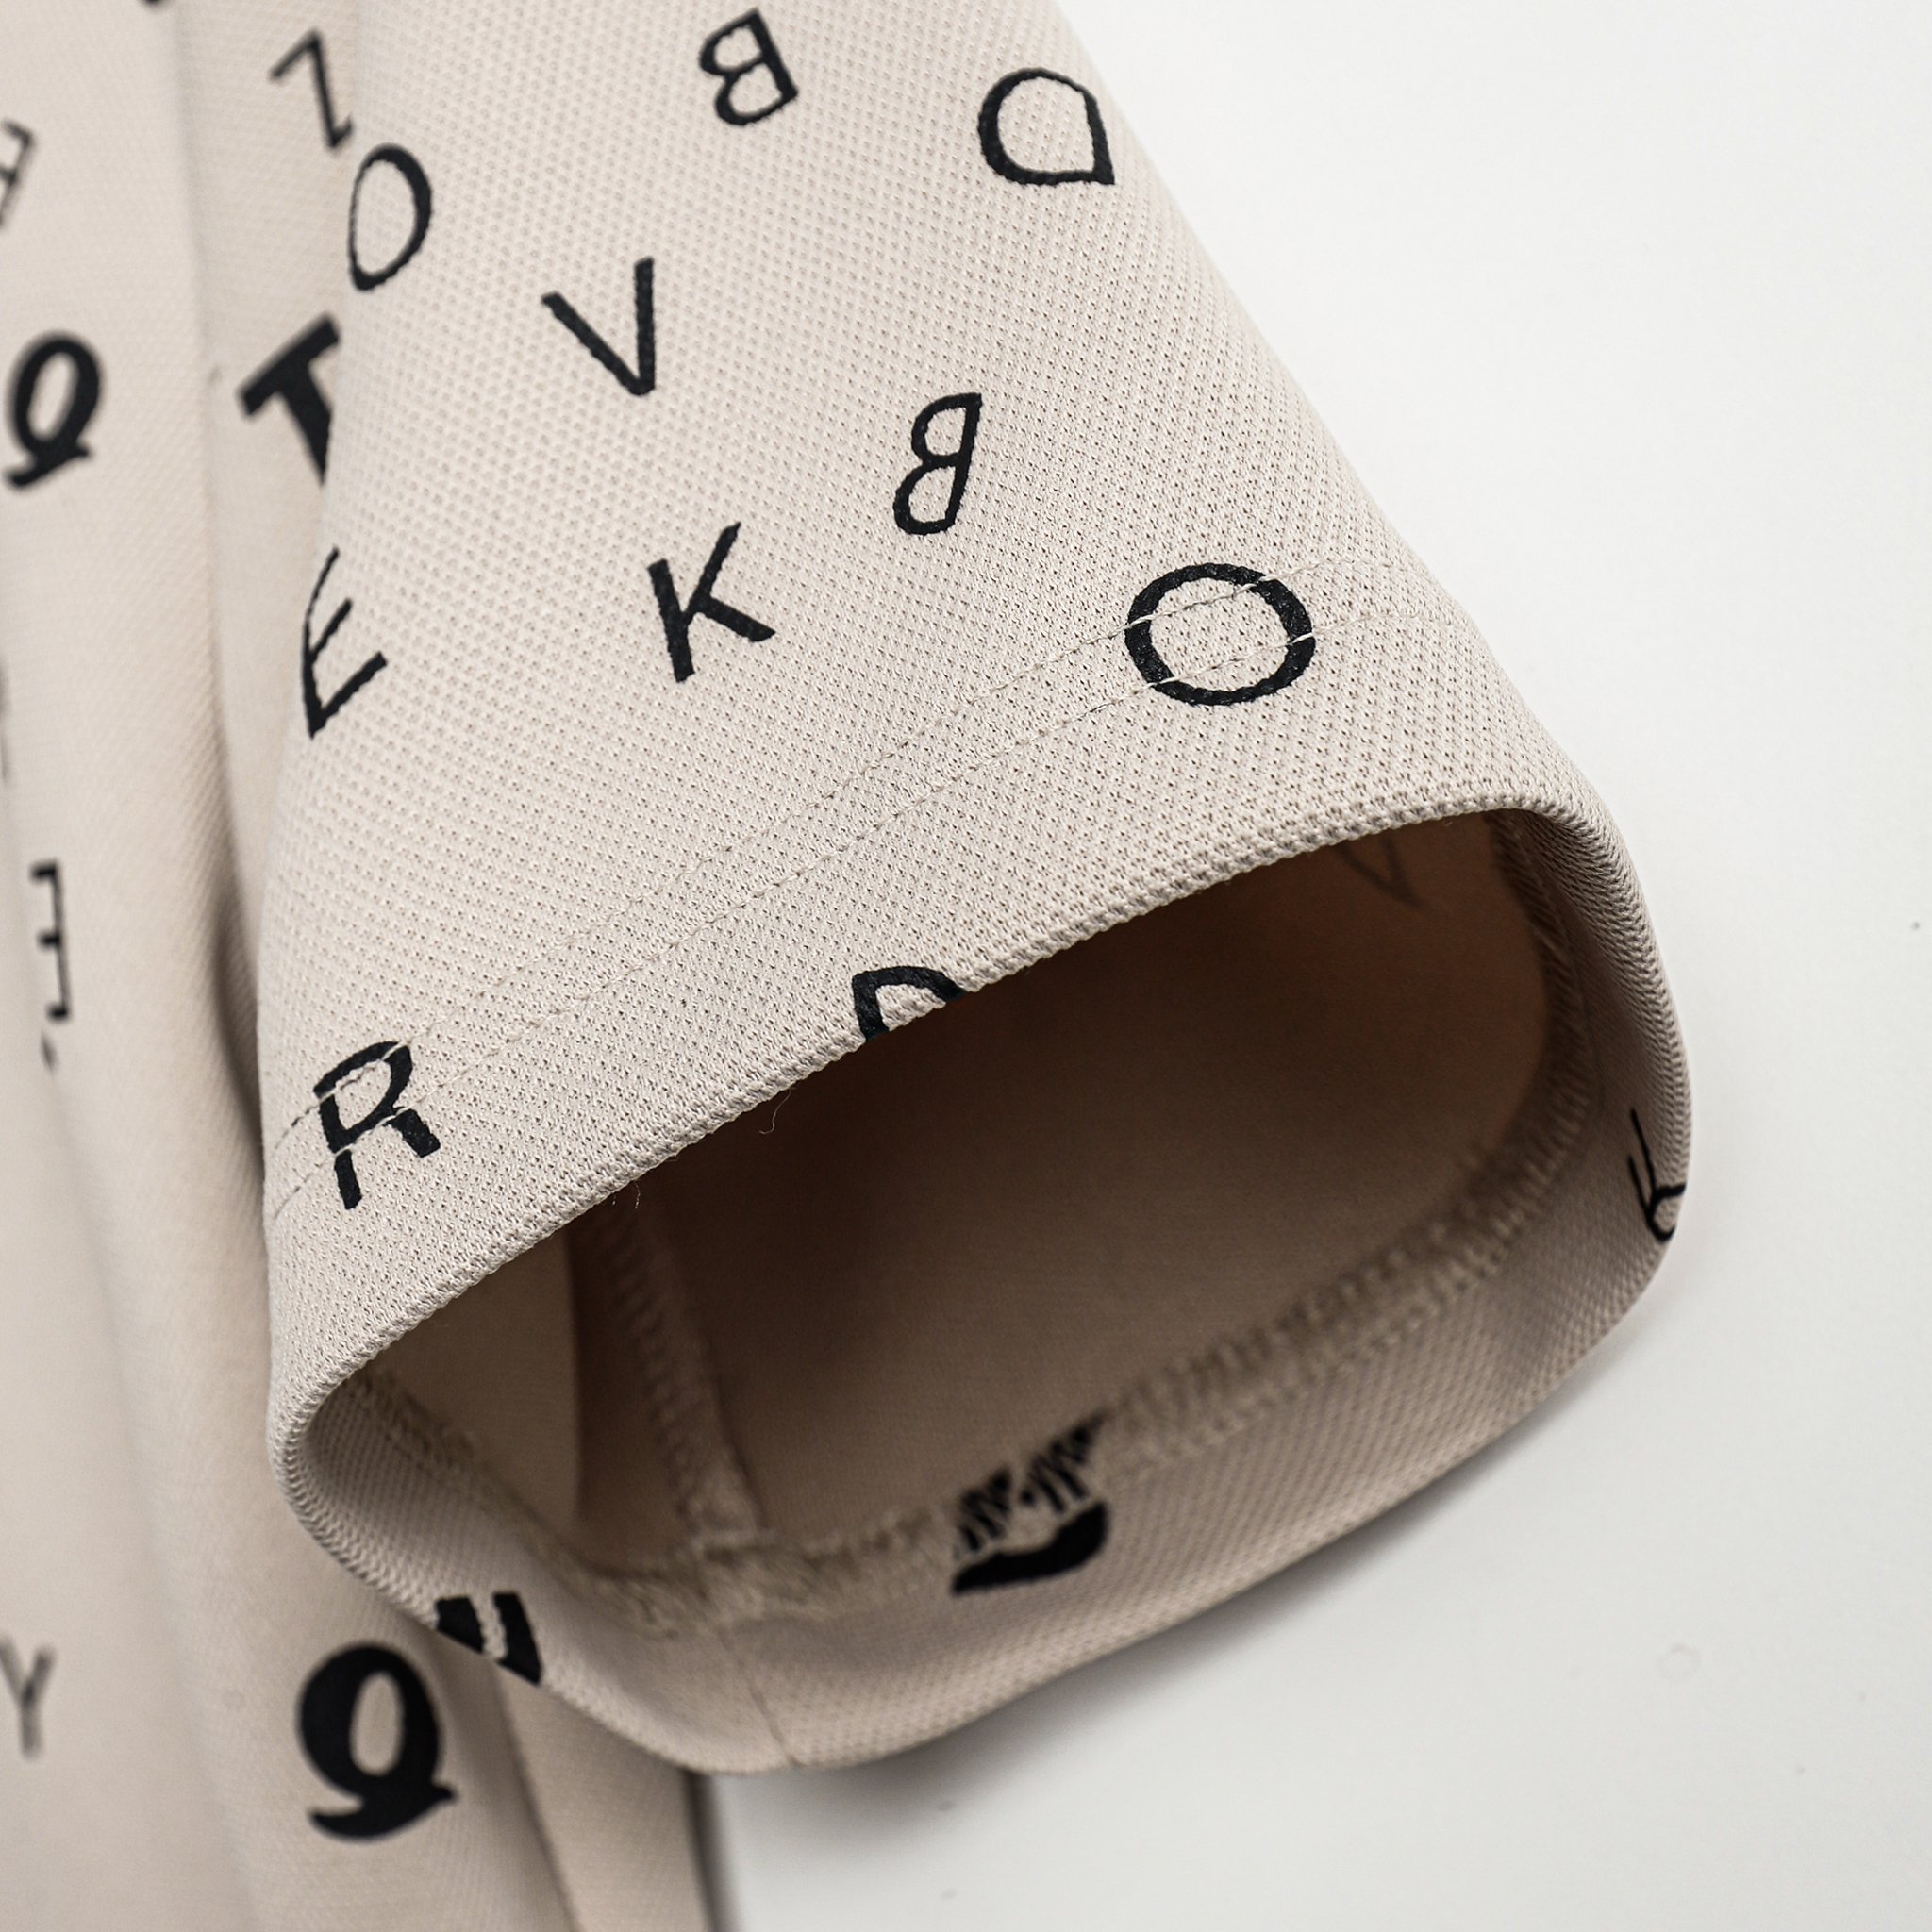 Áo thun cổ tròn thiết kế khóa kéo, chất vải cotton cá sấu pique, họa tiết chử in lụa Printed tee AMANLAB